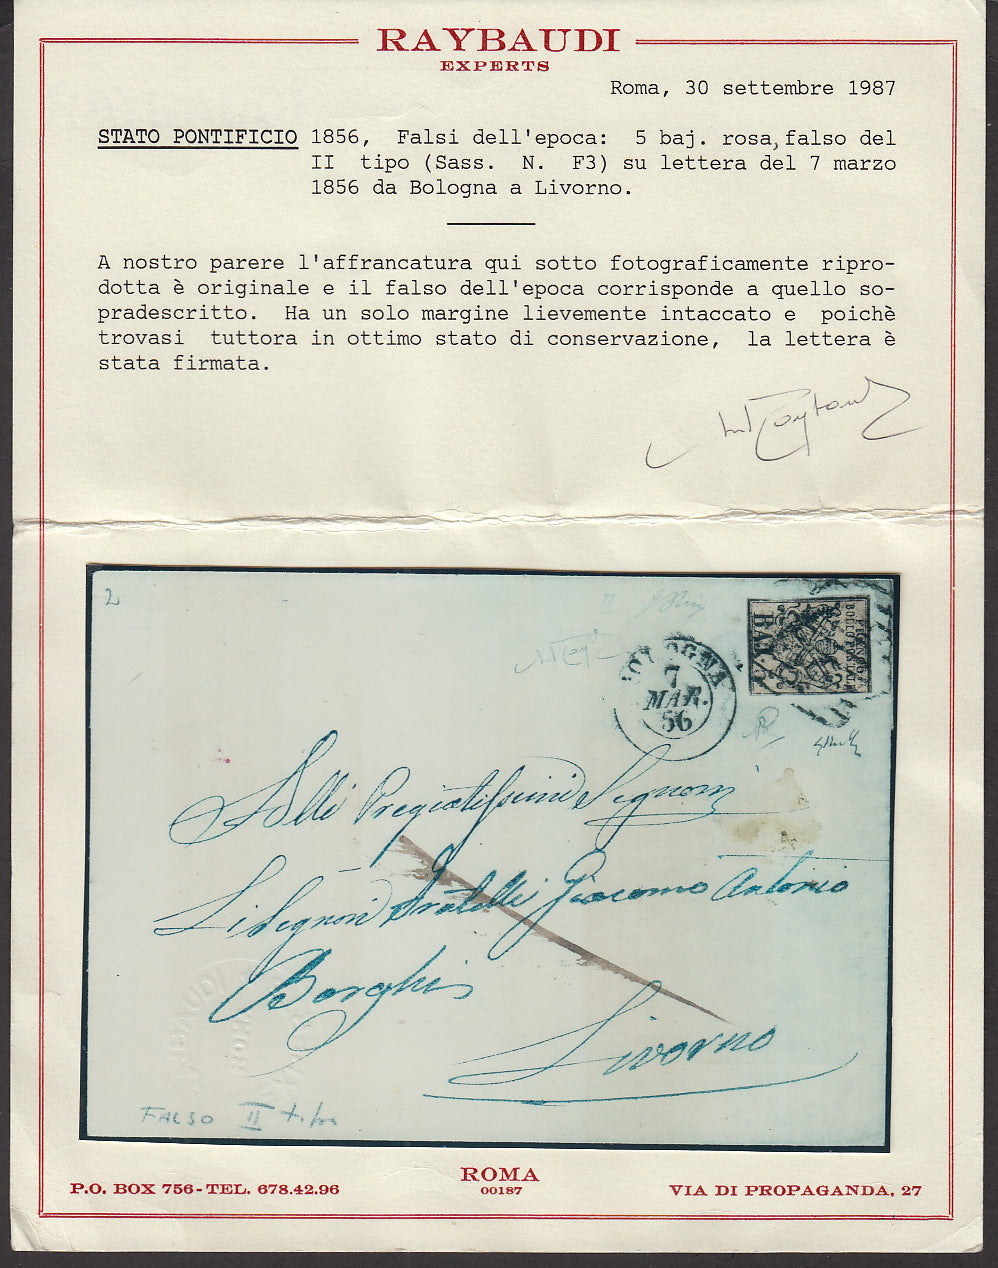 BA23-57 1856 - Lettera spedita da Bologna per Livorno 7/3/56 affrancata con 5 baj rosa falso per servire del II tipo. (F3).